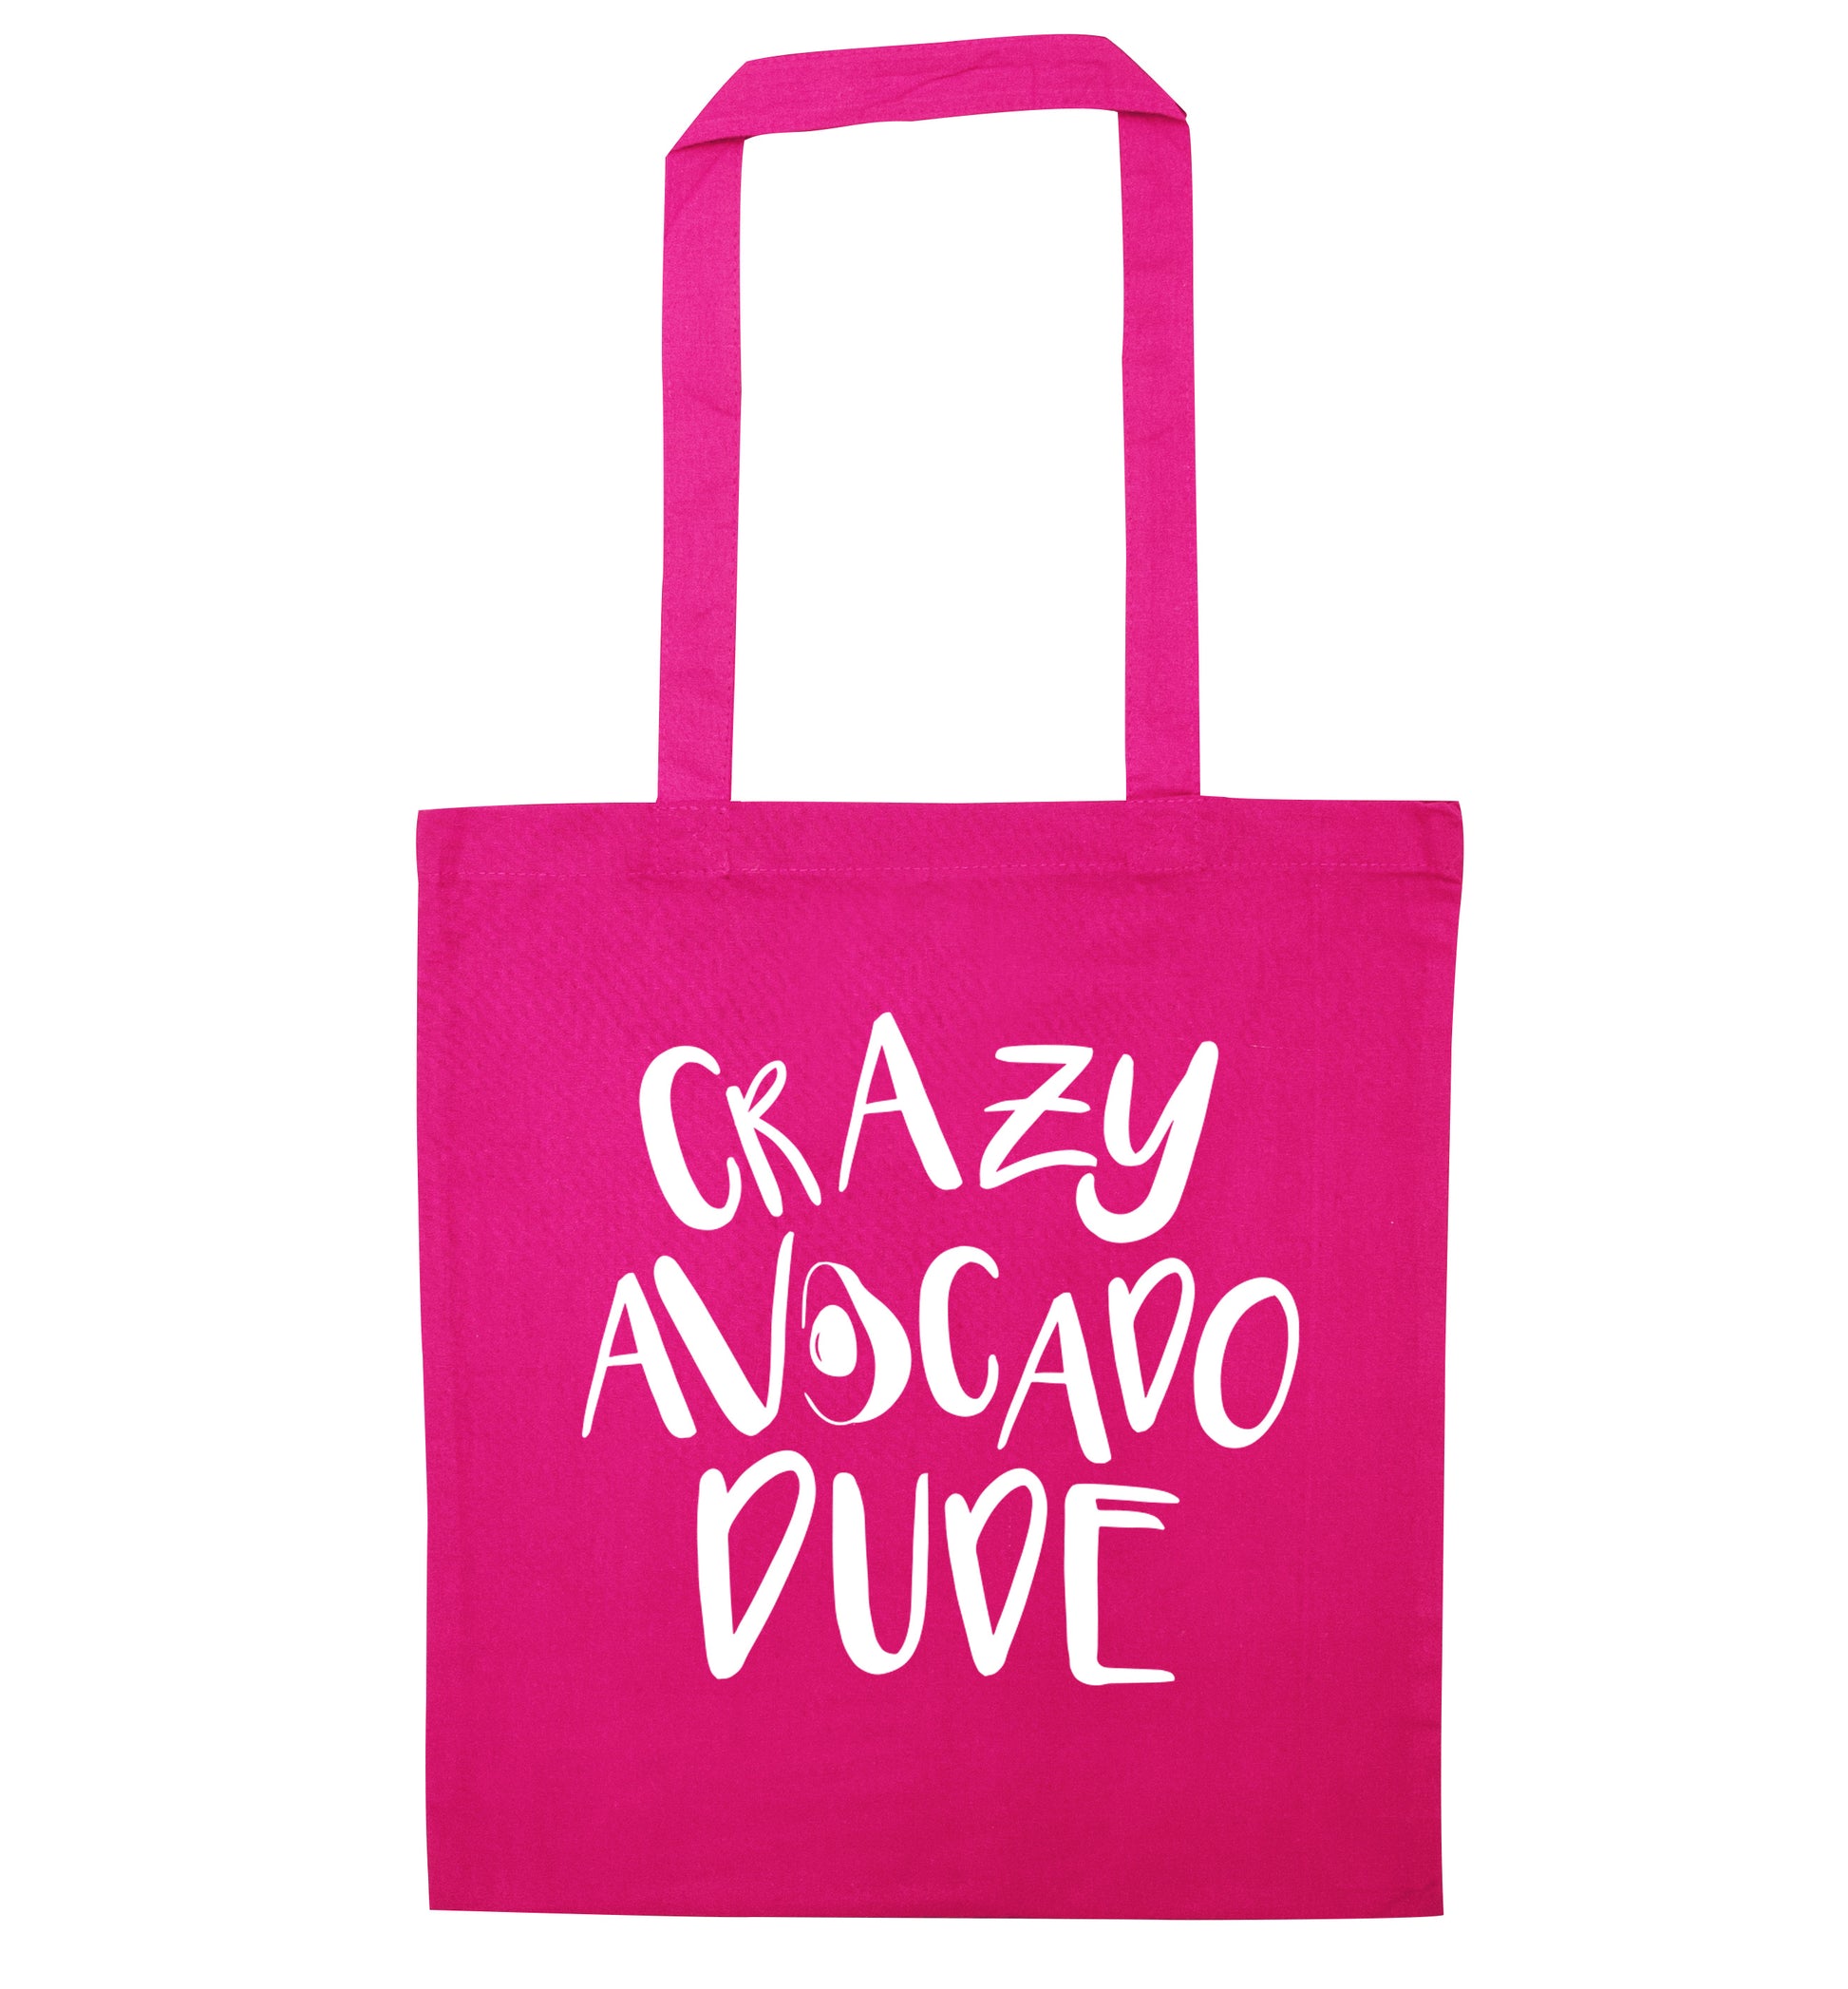 Crazy avocado dude pink tote bag